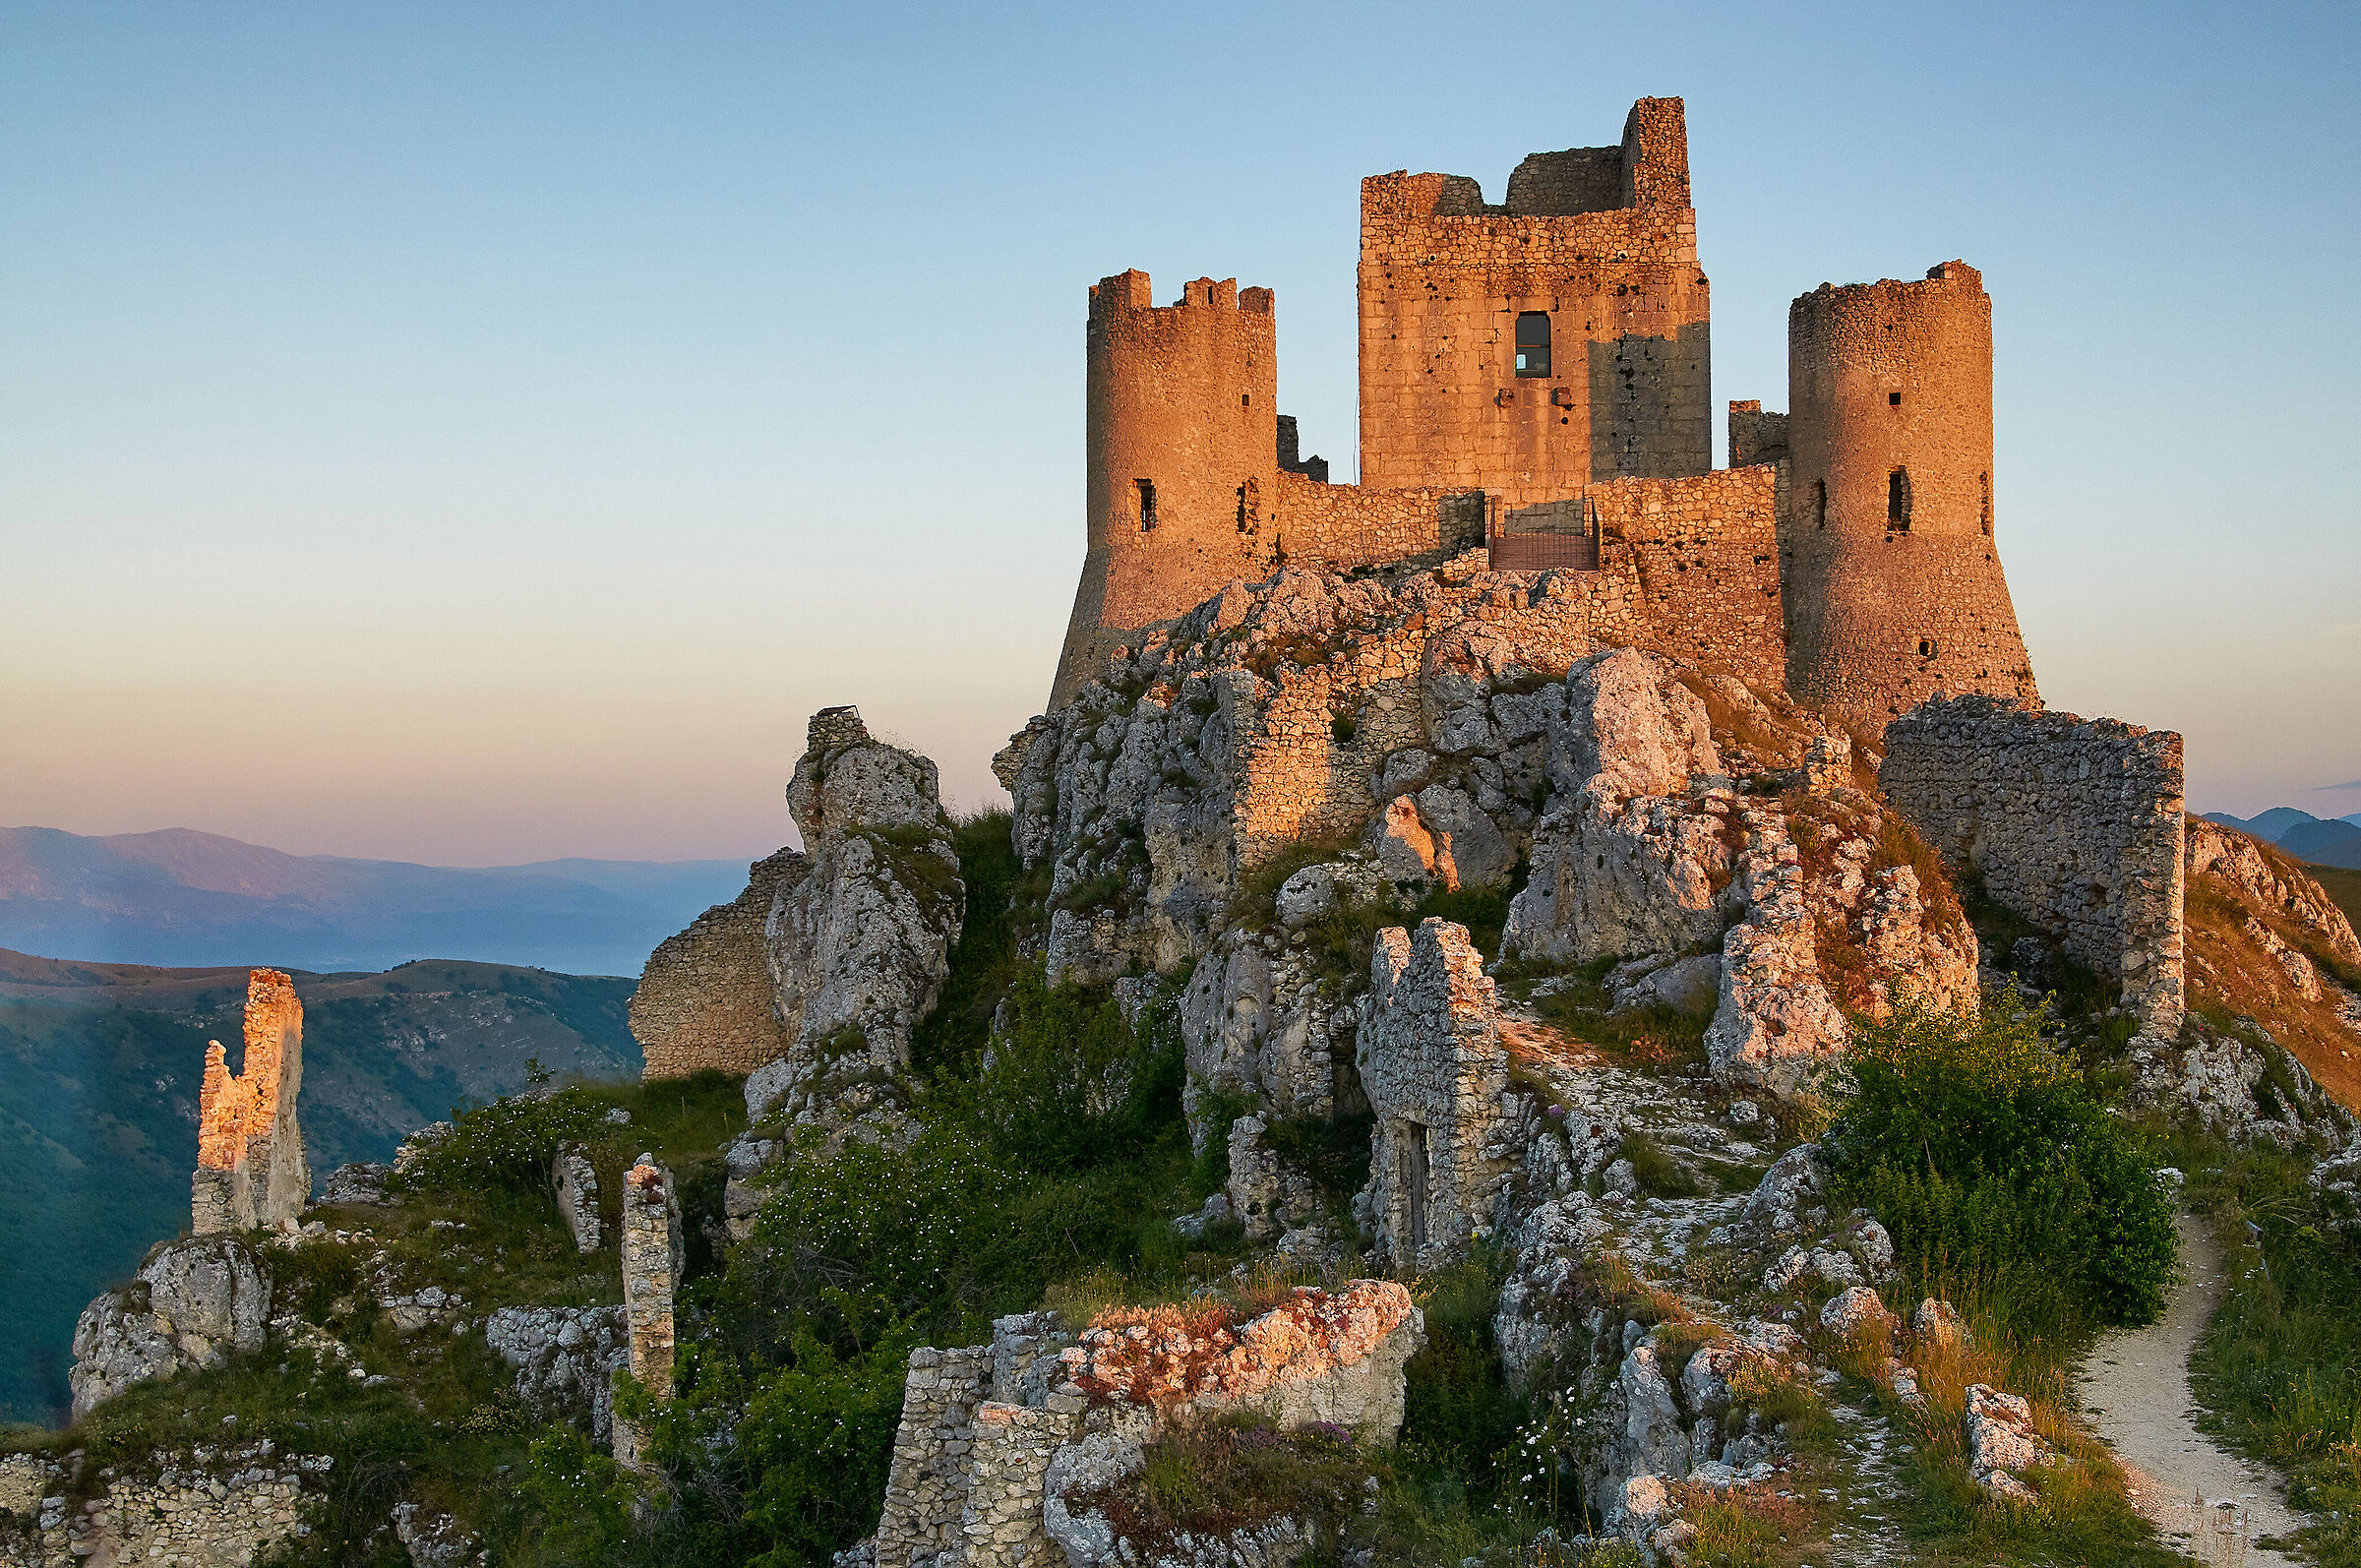 The castle of Rocca Calascio...